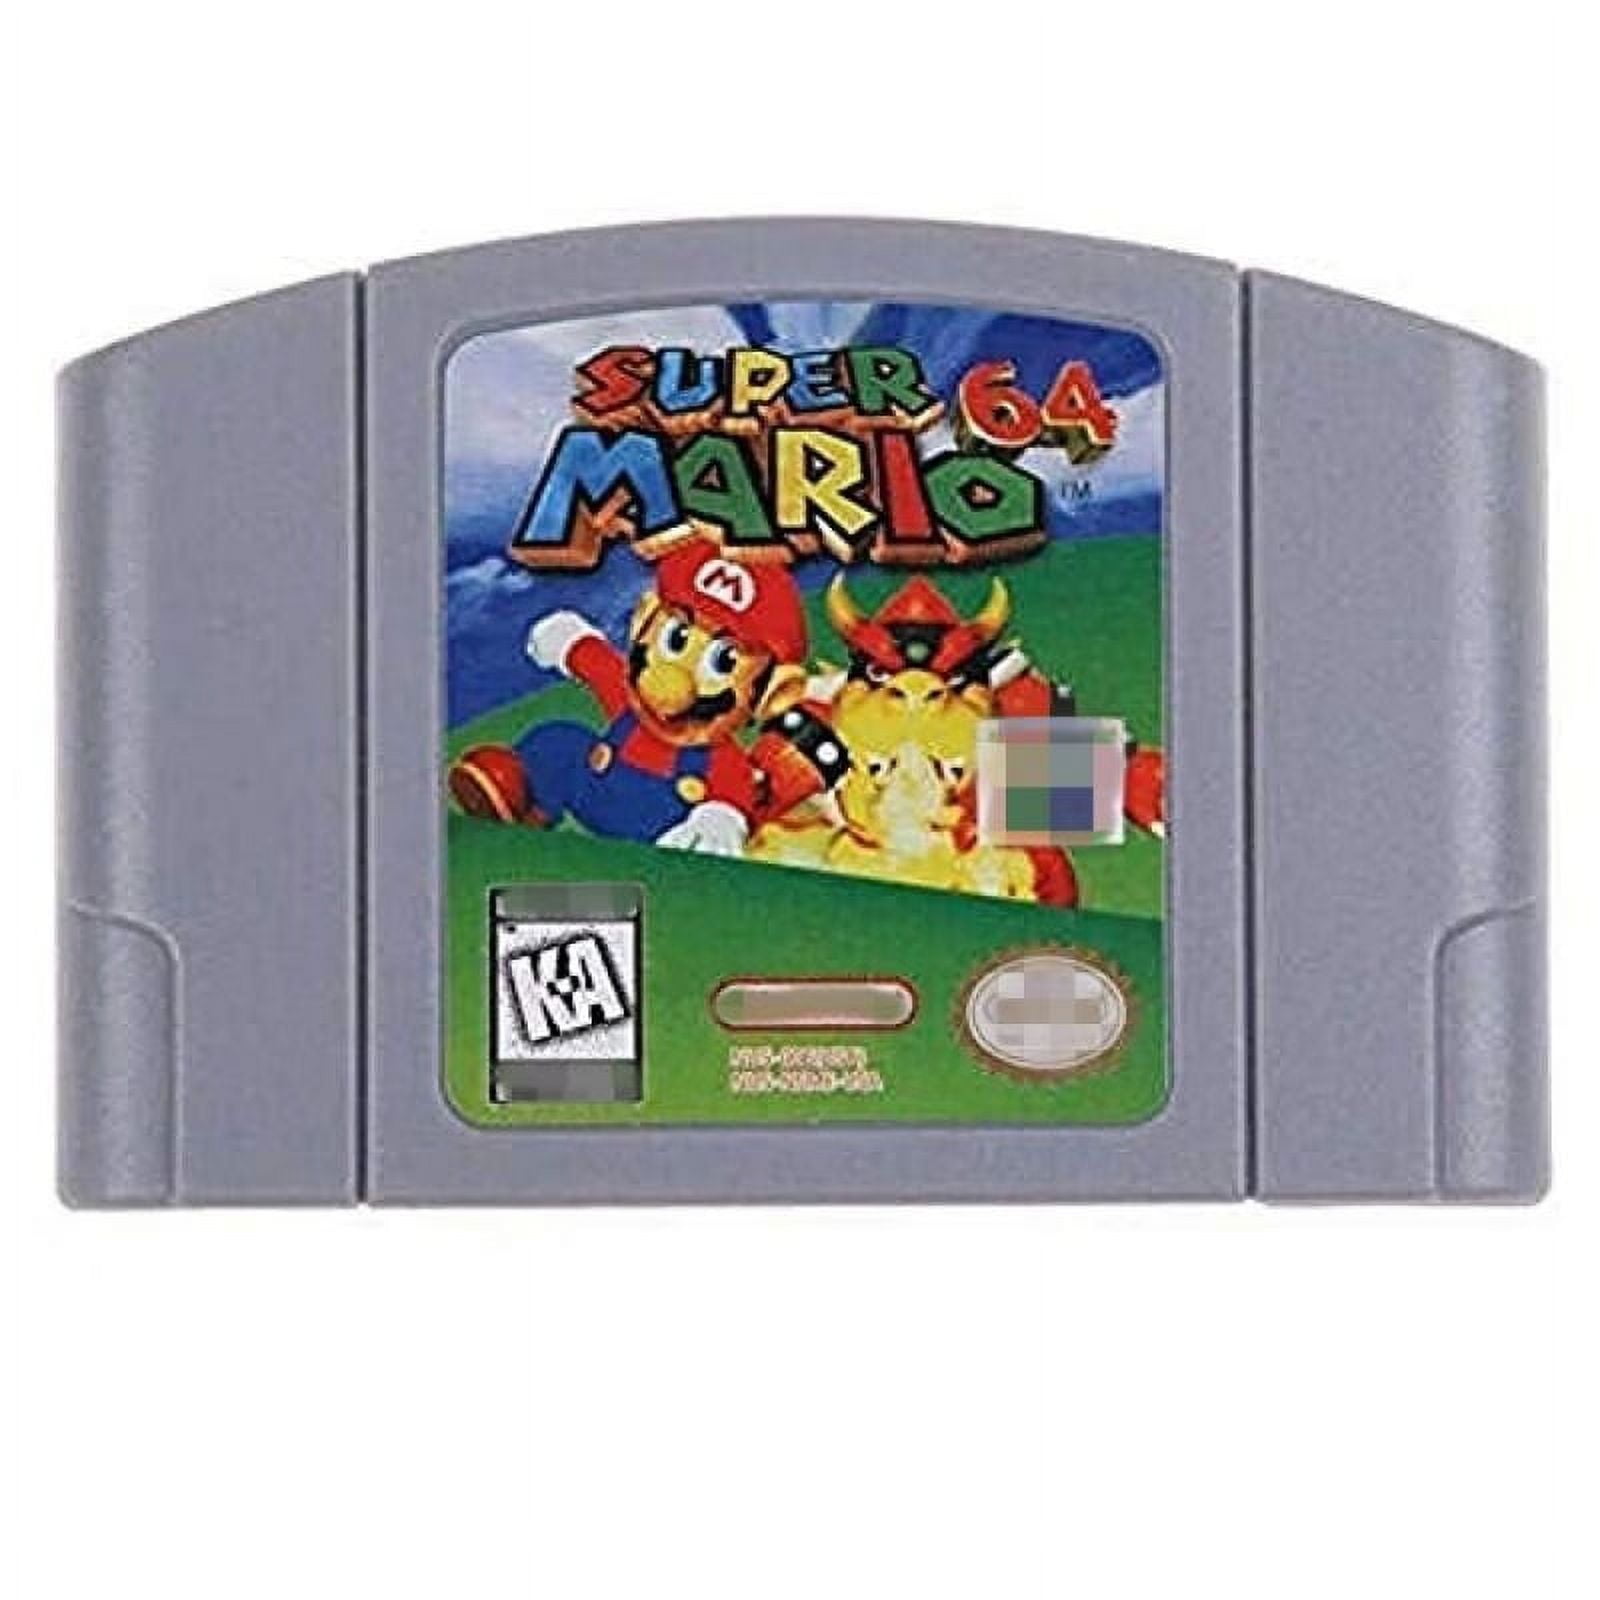 Super Mario 64 (Jogo Nintendo 64, N64) Algueirão-Mem Martins • OLX Portugal